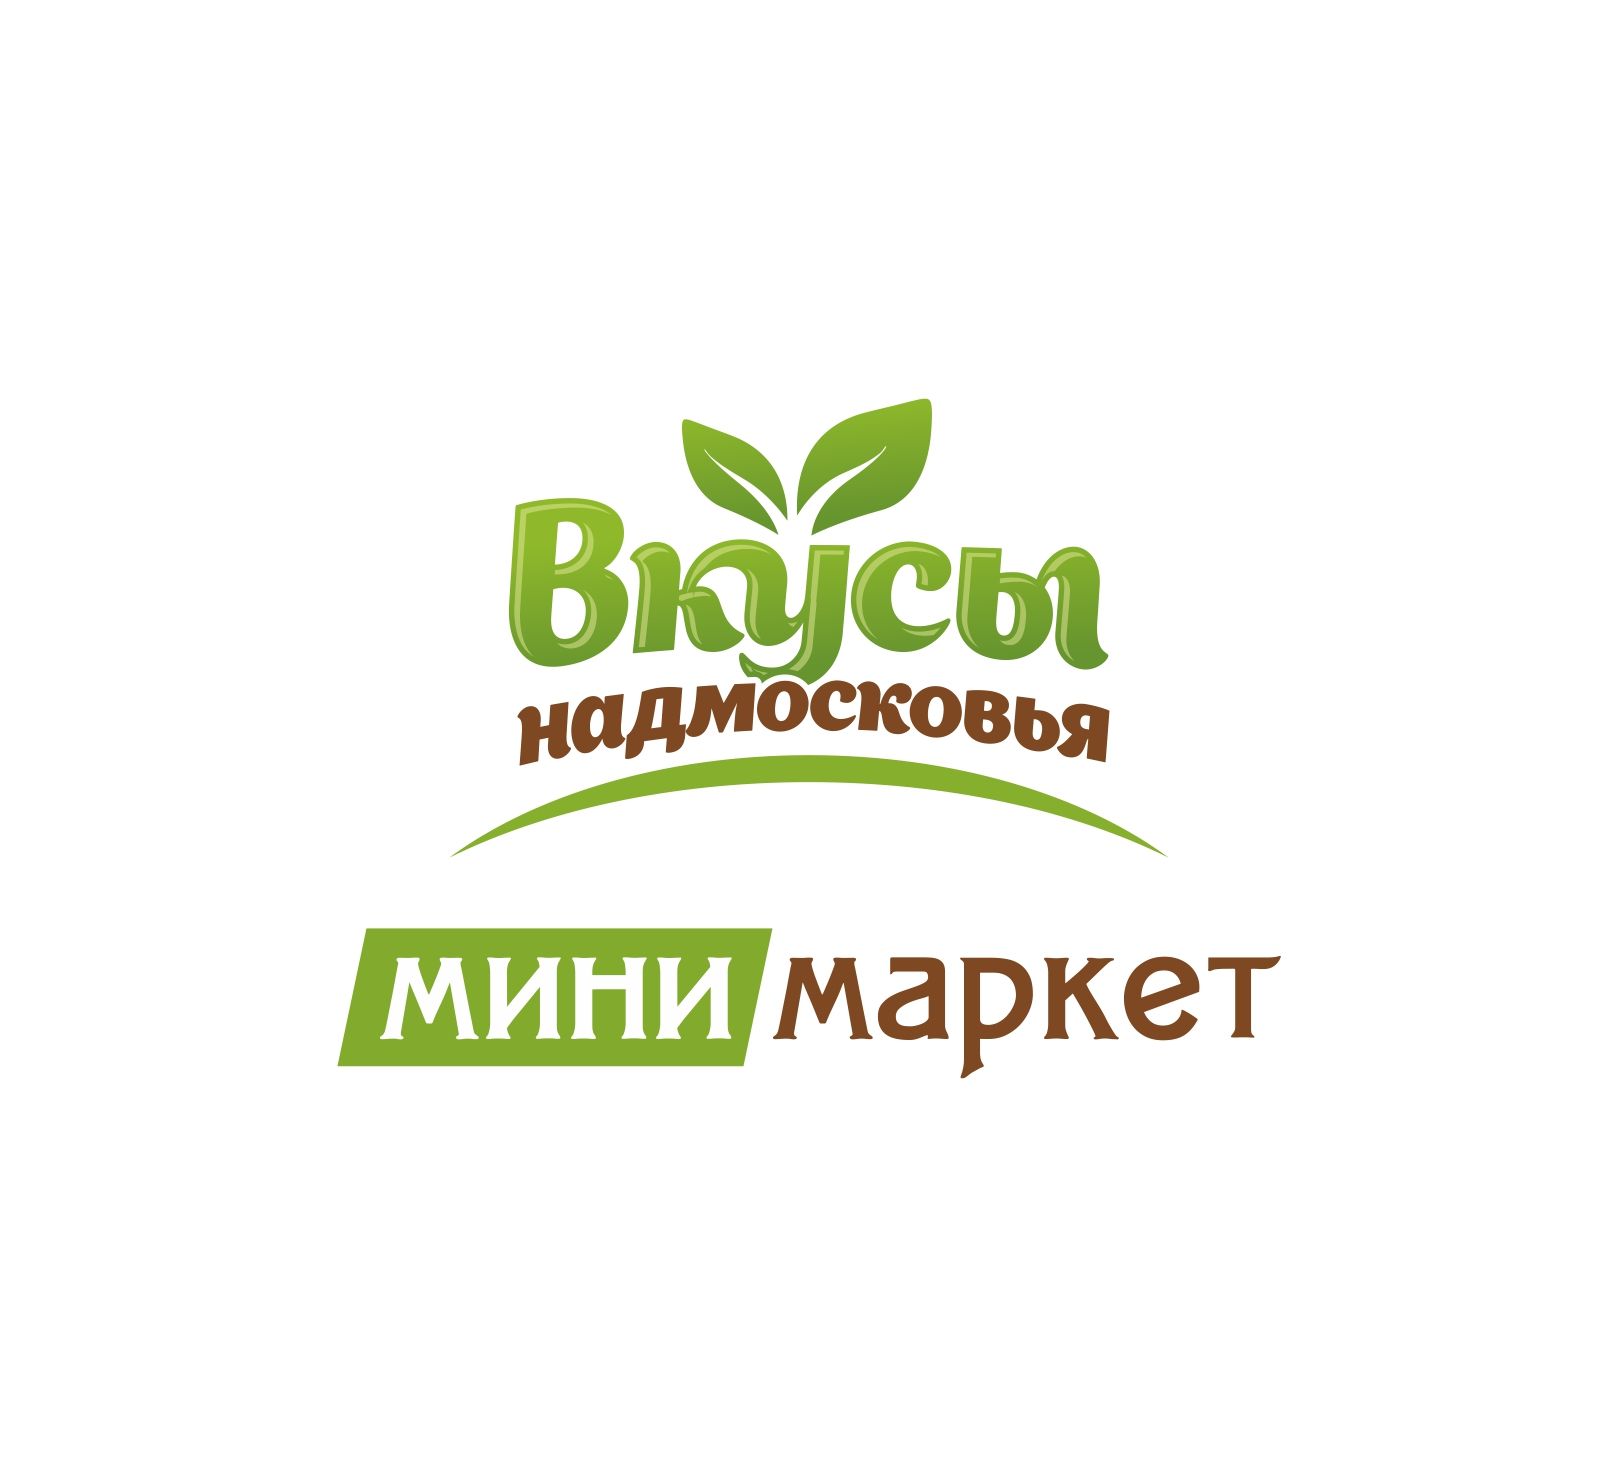 Лого и фирменный стиль для Вкусы Надмосковья - дизайнер Katarinka